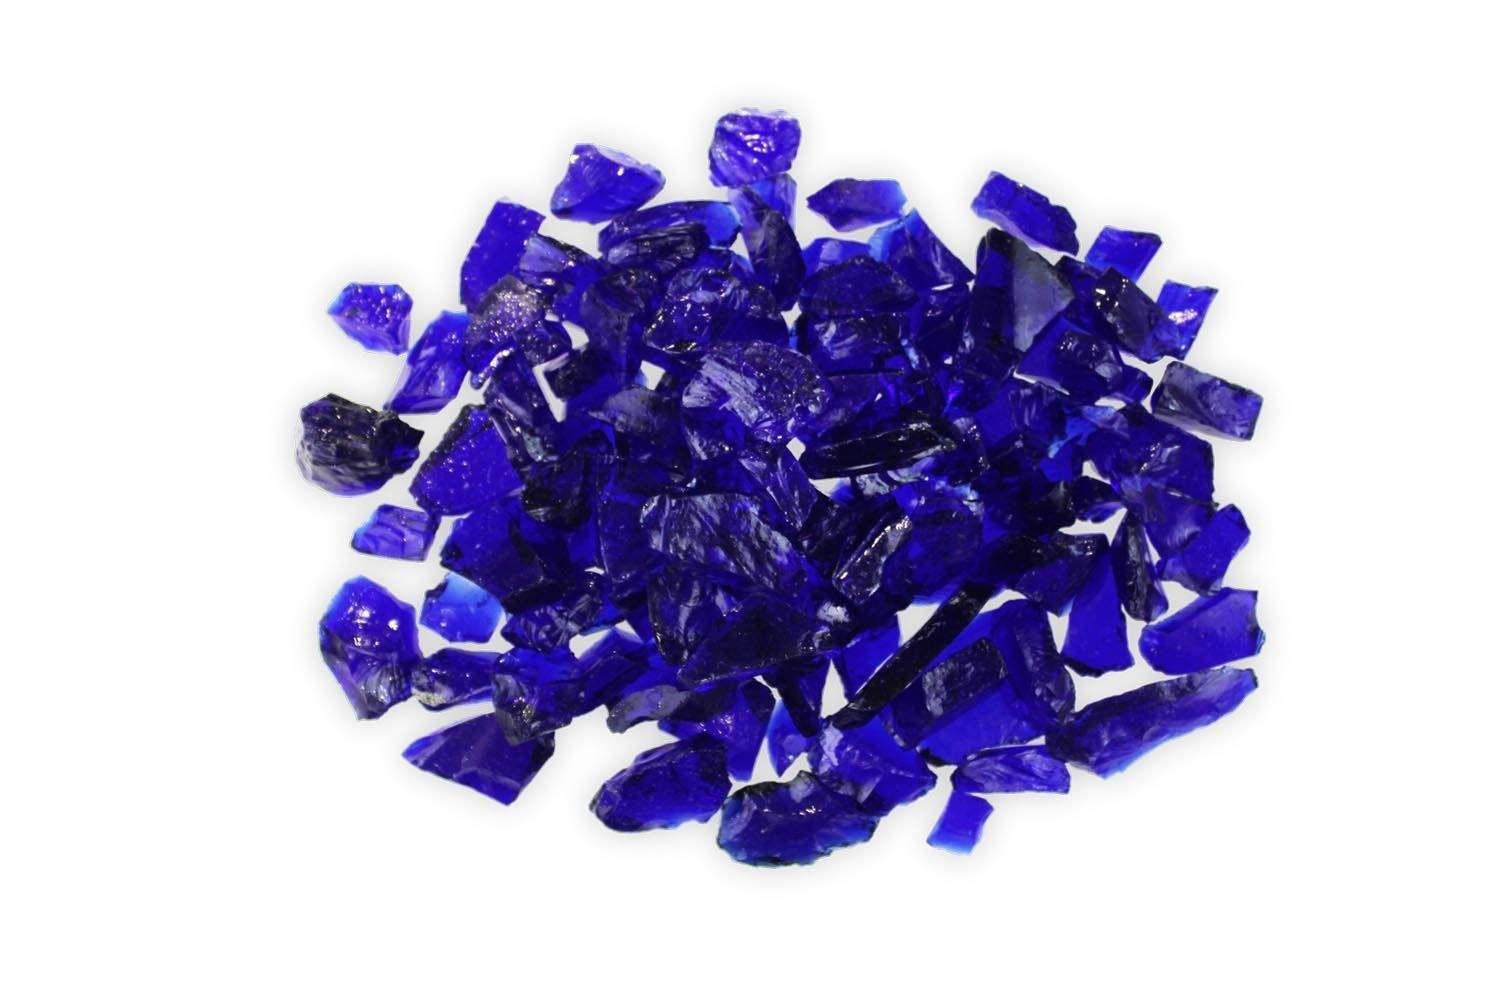 Firegear Firegear - Blueberry (Dark Blue) Irregularly Shaped Glass